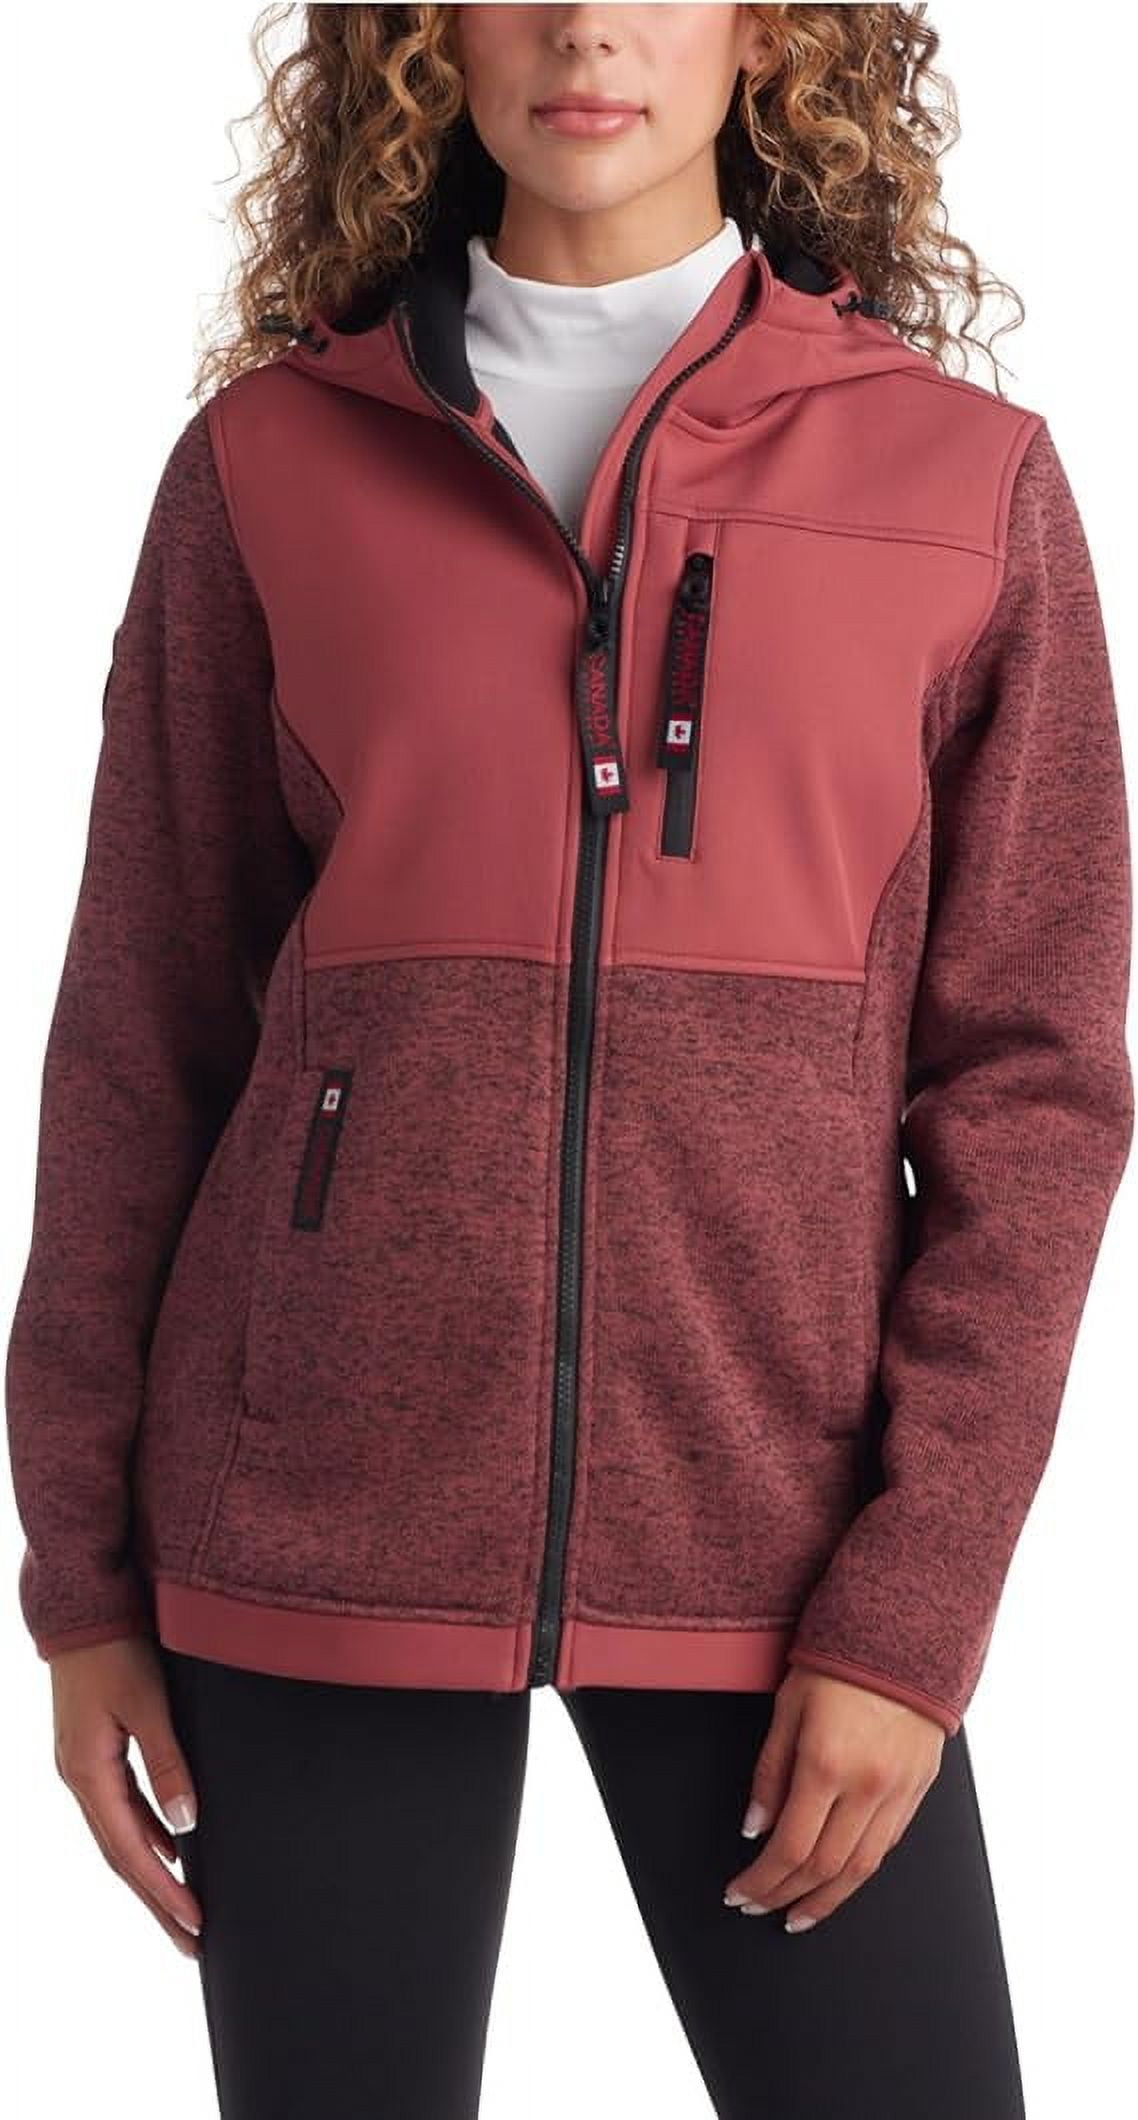 CANADA WEATHER GEAR Womens Sweatshirt - Full Zip Hooded Sweater Fleece  Jacket, S-XL 